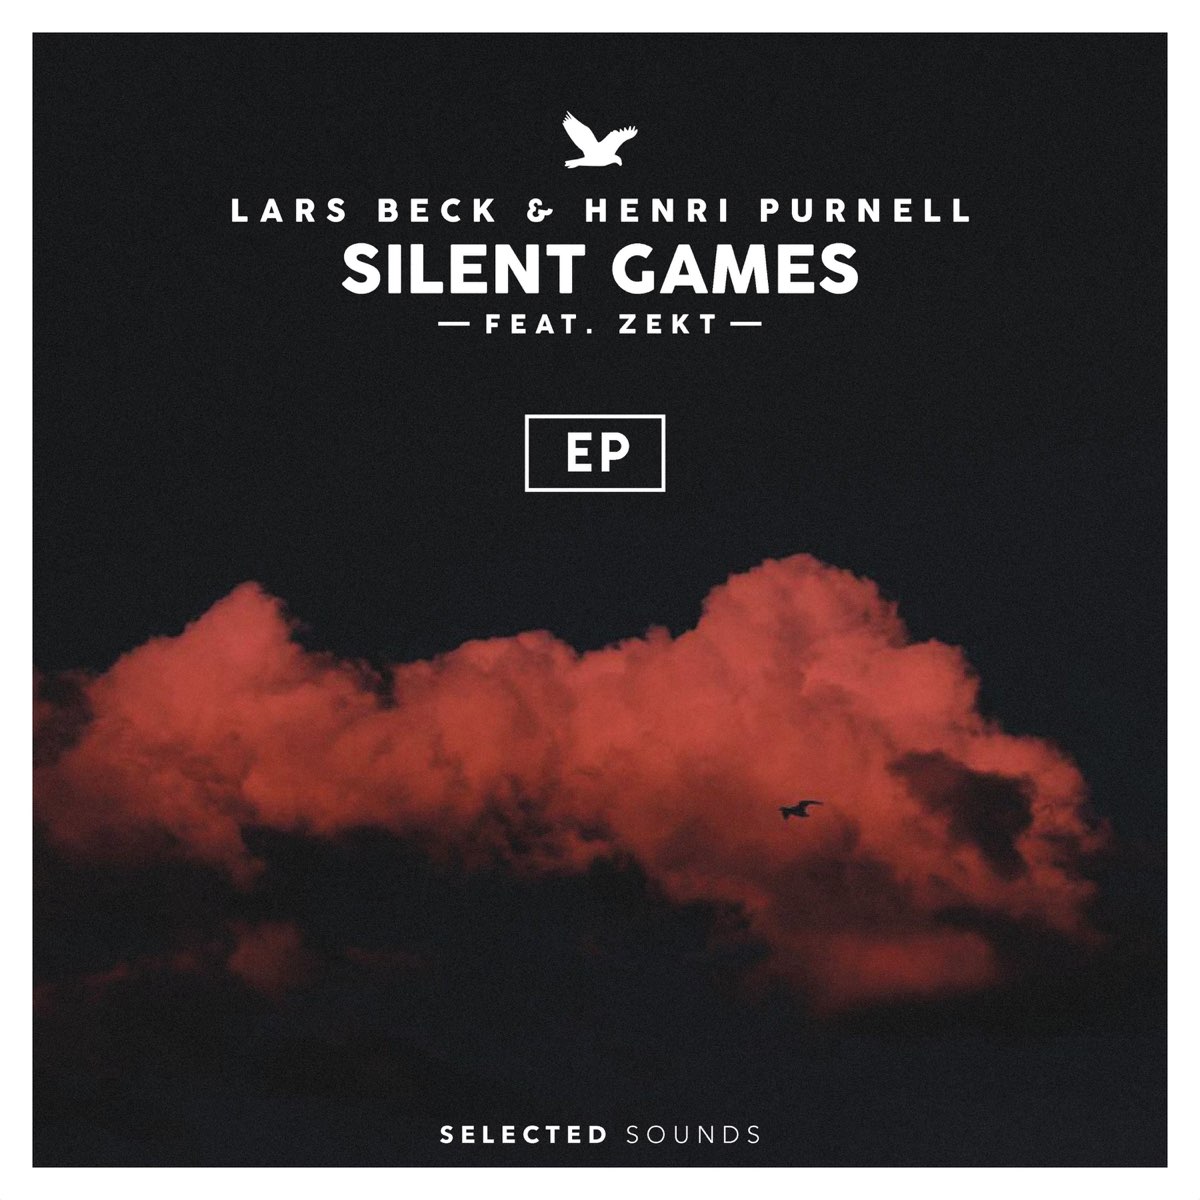 Zekt. Lars Beck & Henri Purnell - Silent games (UOAK Remix). Revelries Henri Purnell - feel it still. Игры тихая музыка